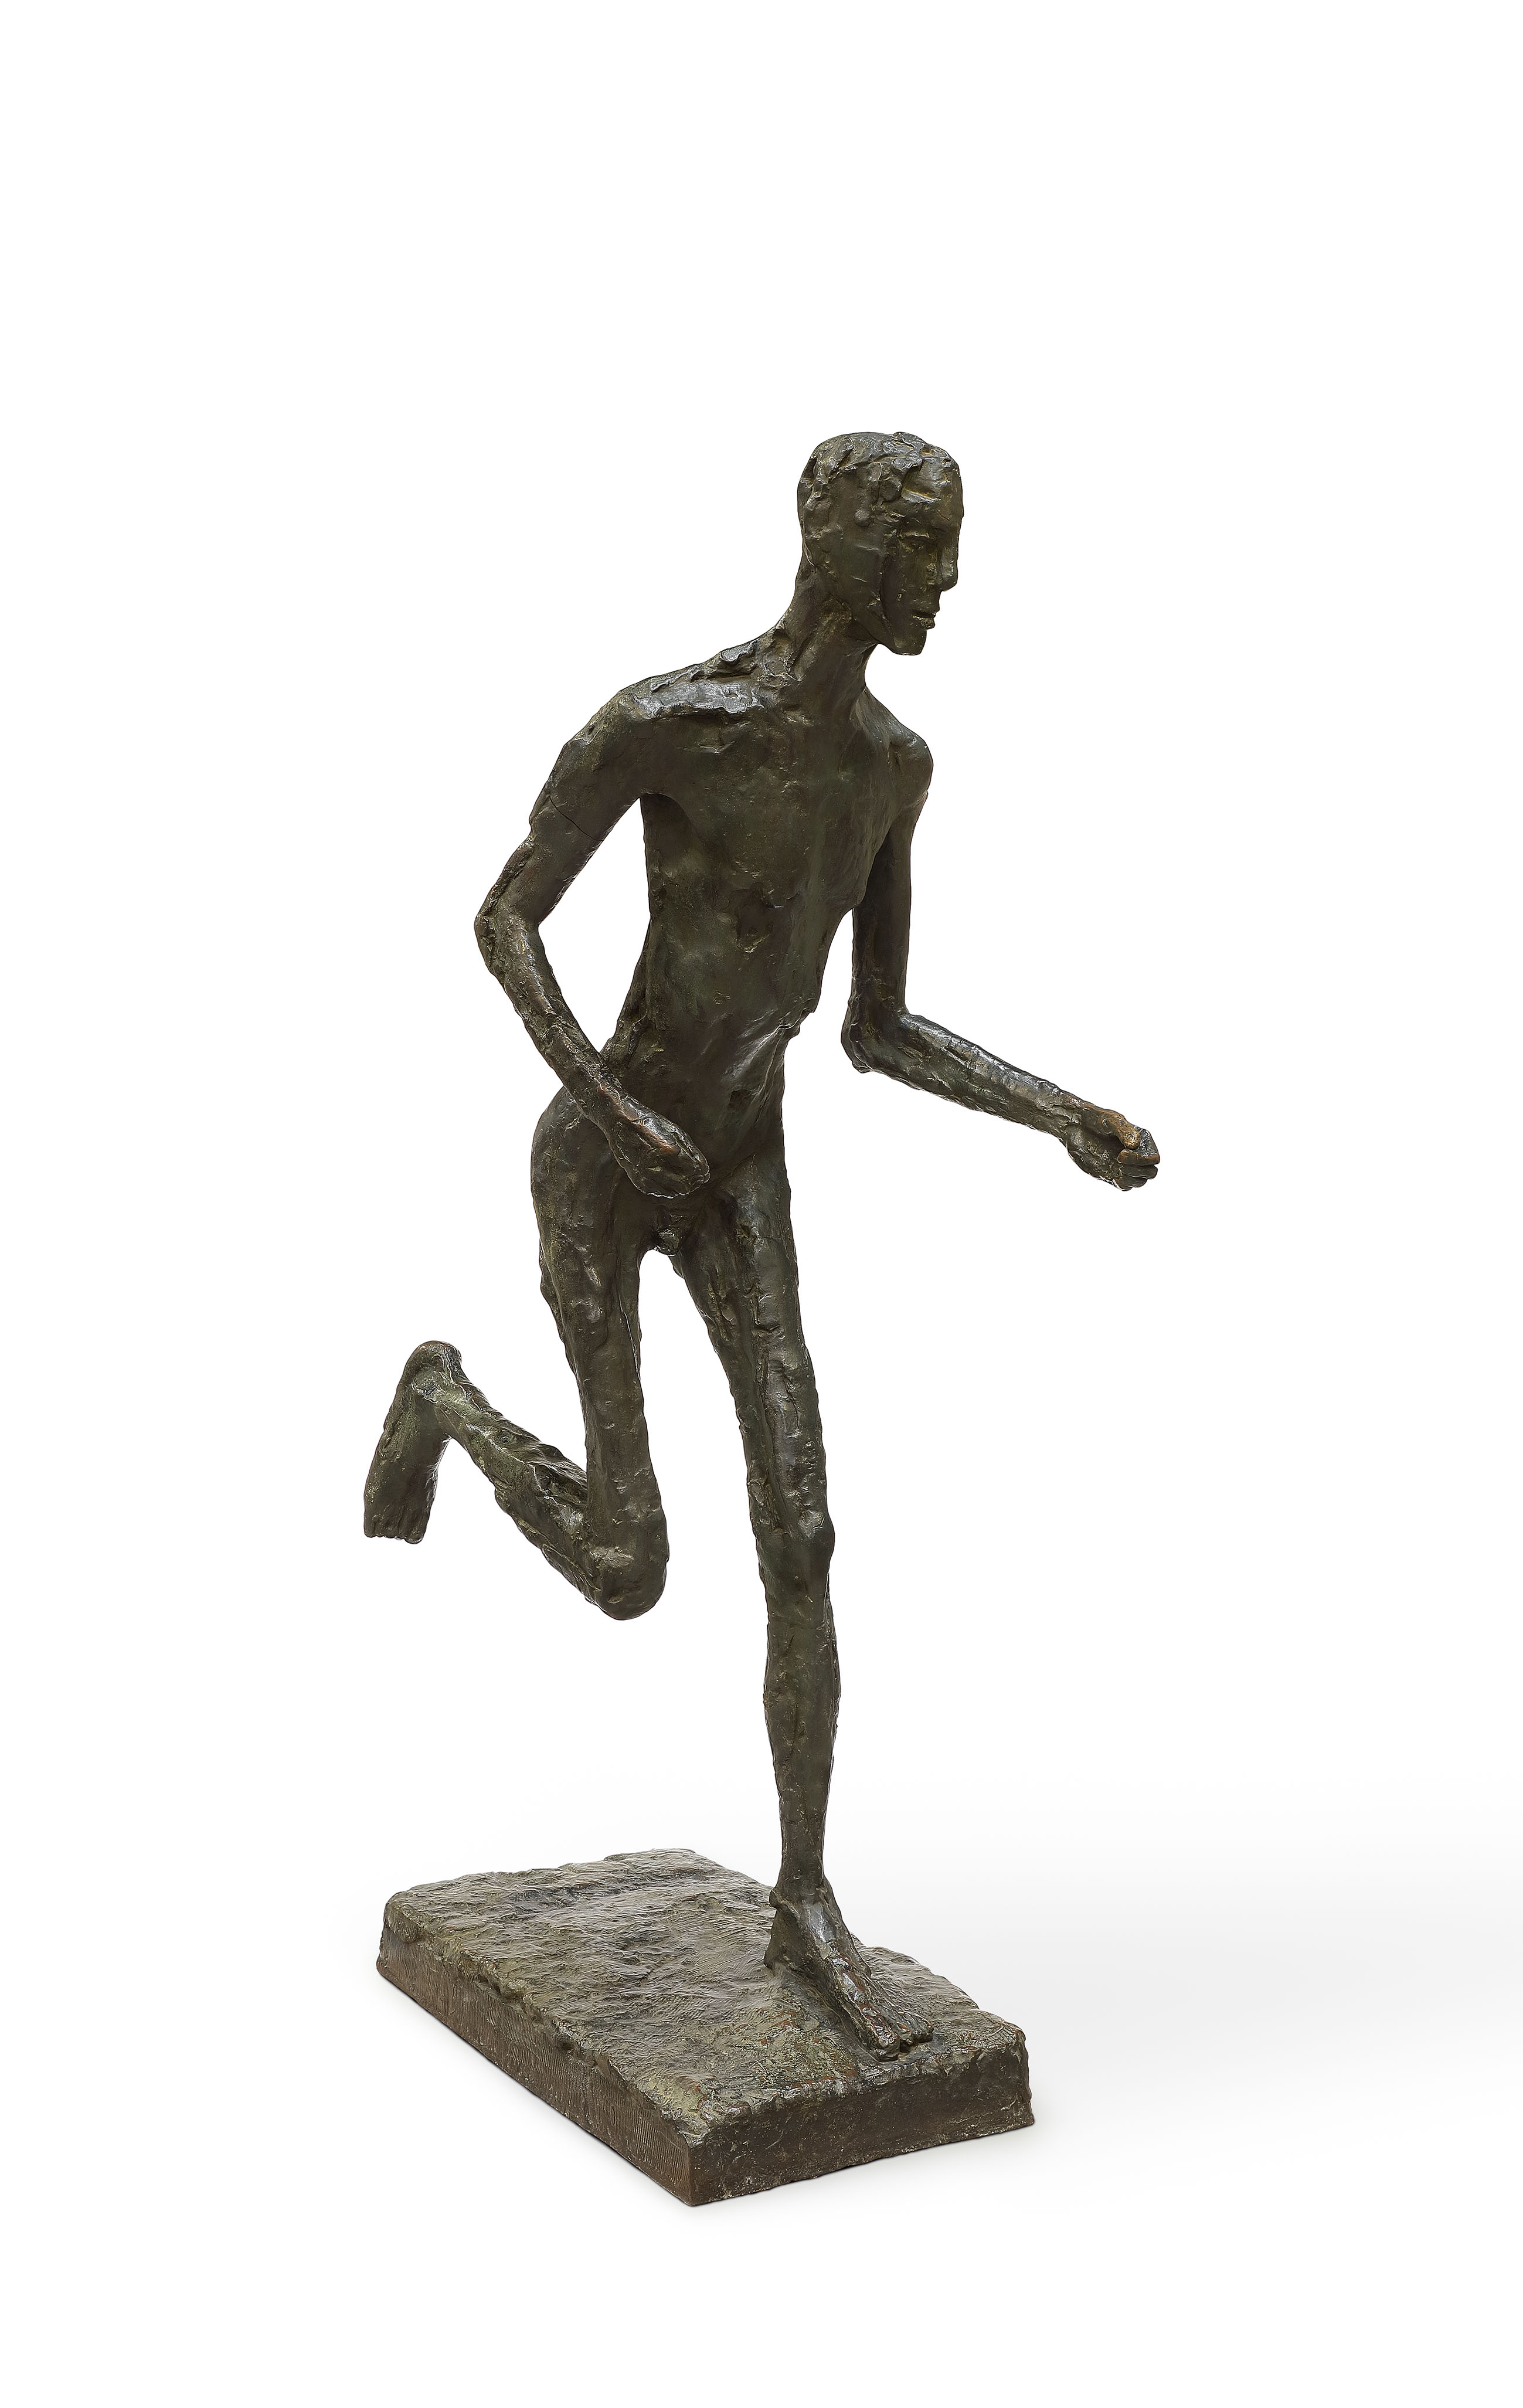 Germaine Richier, Coureur, vers 1955. Bronze, 13 x 54 x 94 cm. Paris, Centre national des arts plastiques. Germaine Richier © Adagp, Paris, 2021 ; photo : Cnap / Fabrice Lindor